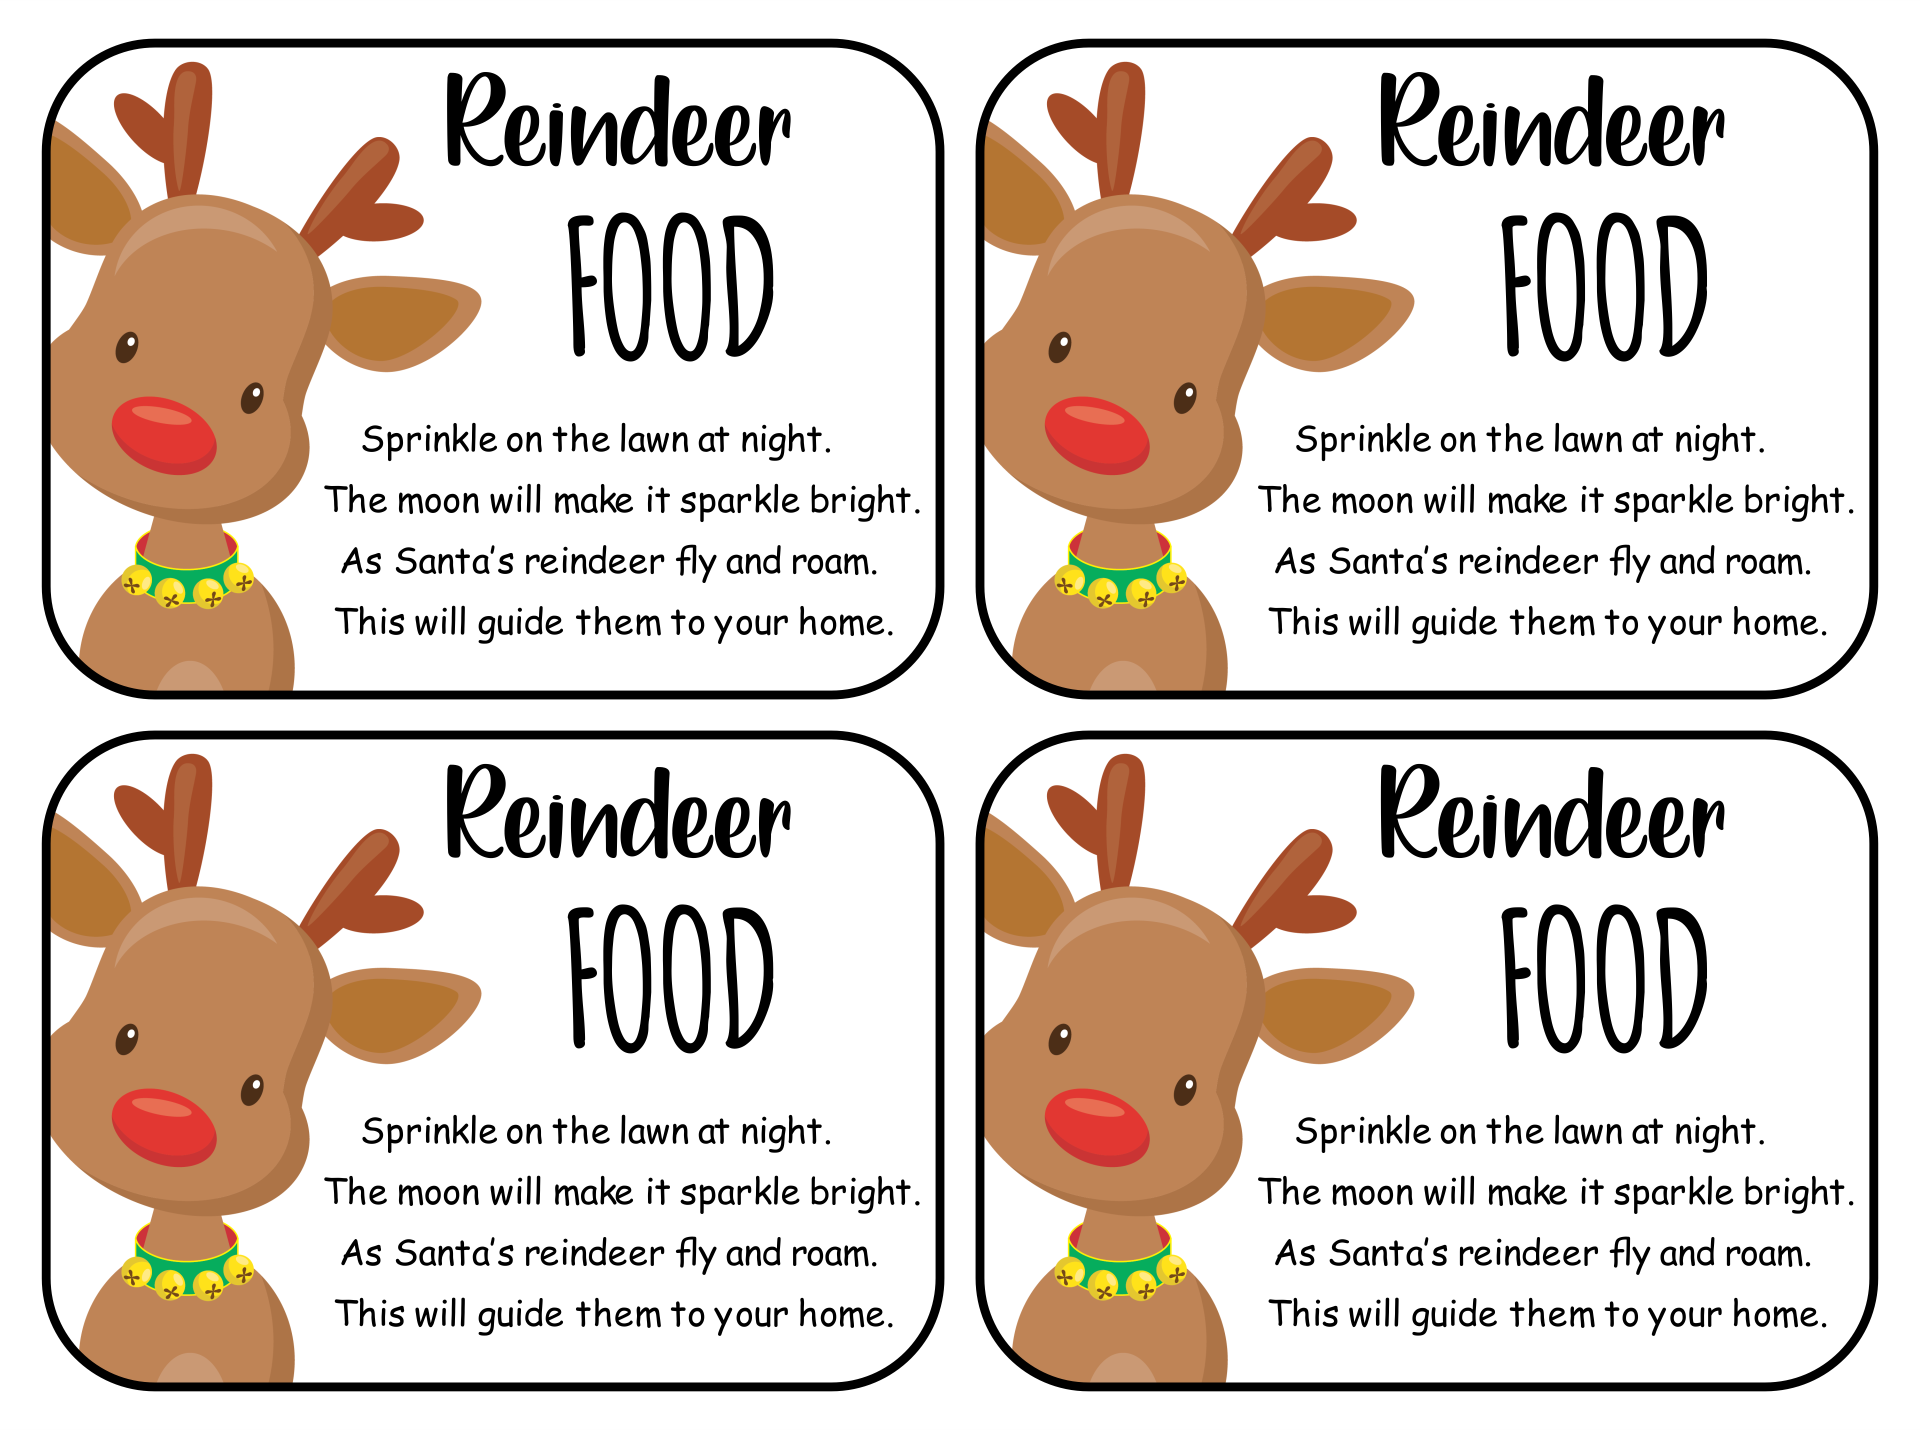 5-best-images-of-reindeer-food-poem-printable-labels-reindeer-food